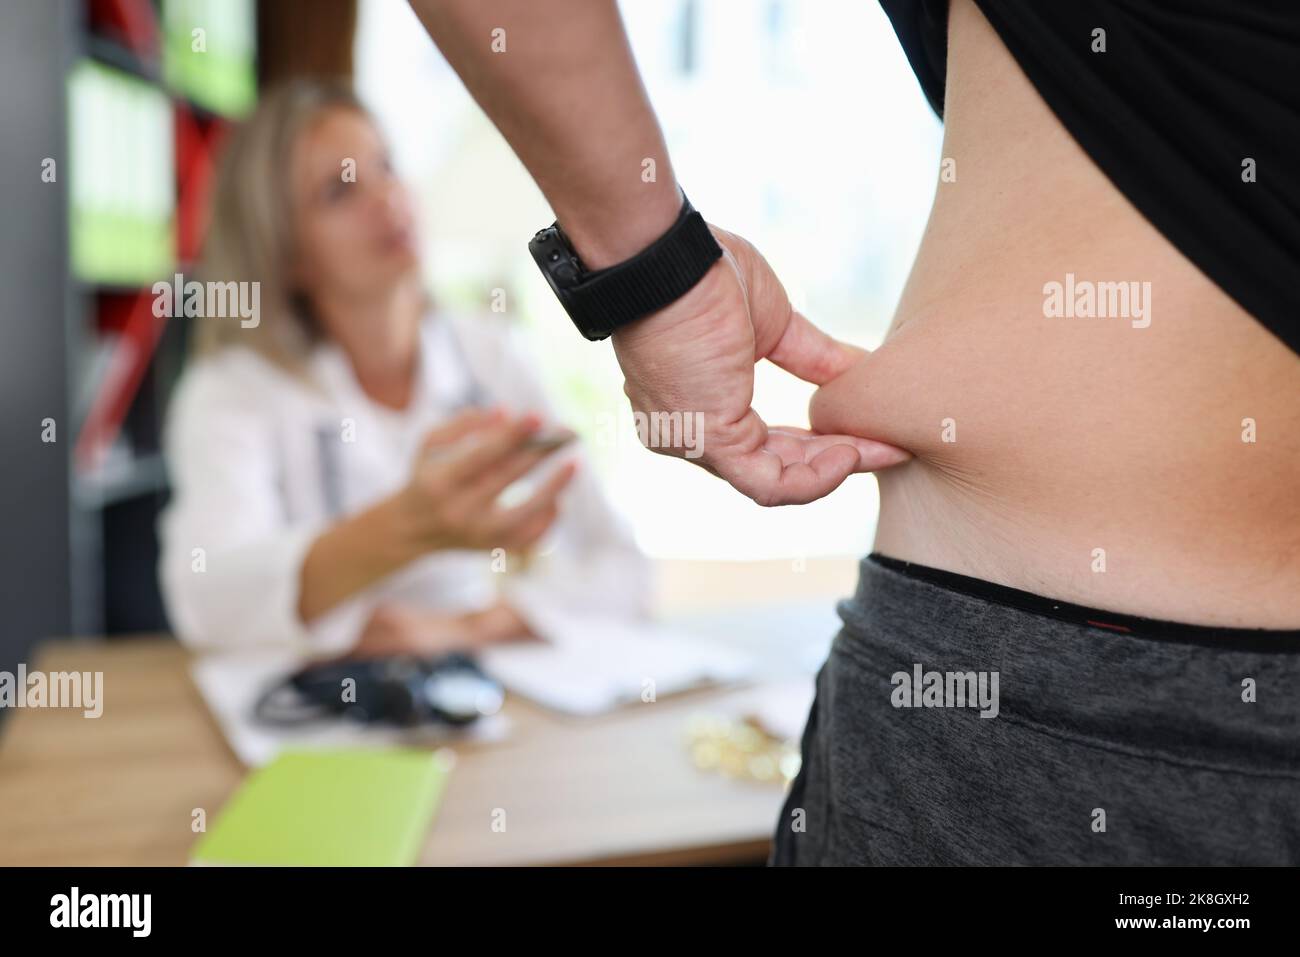 Homme tirant la peau sur l'abdomen, montrant la graisse corporelle dans la zone abdominale Banque D'Images